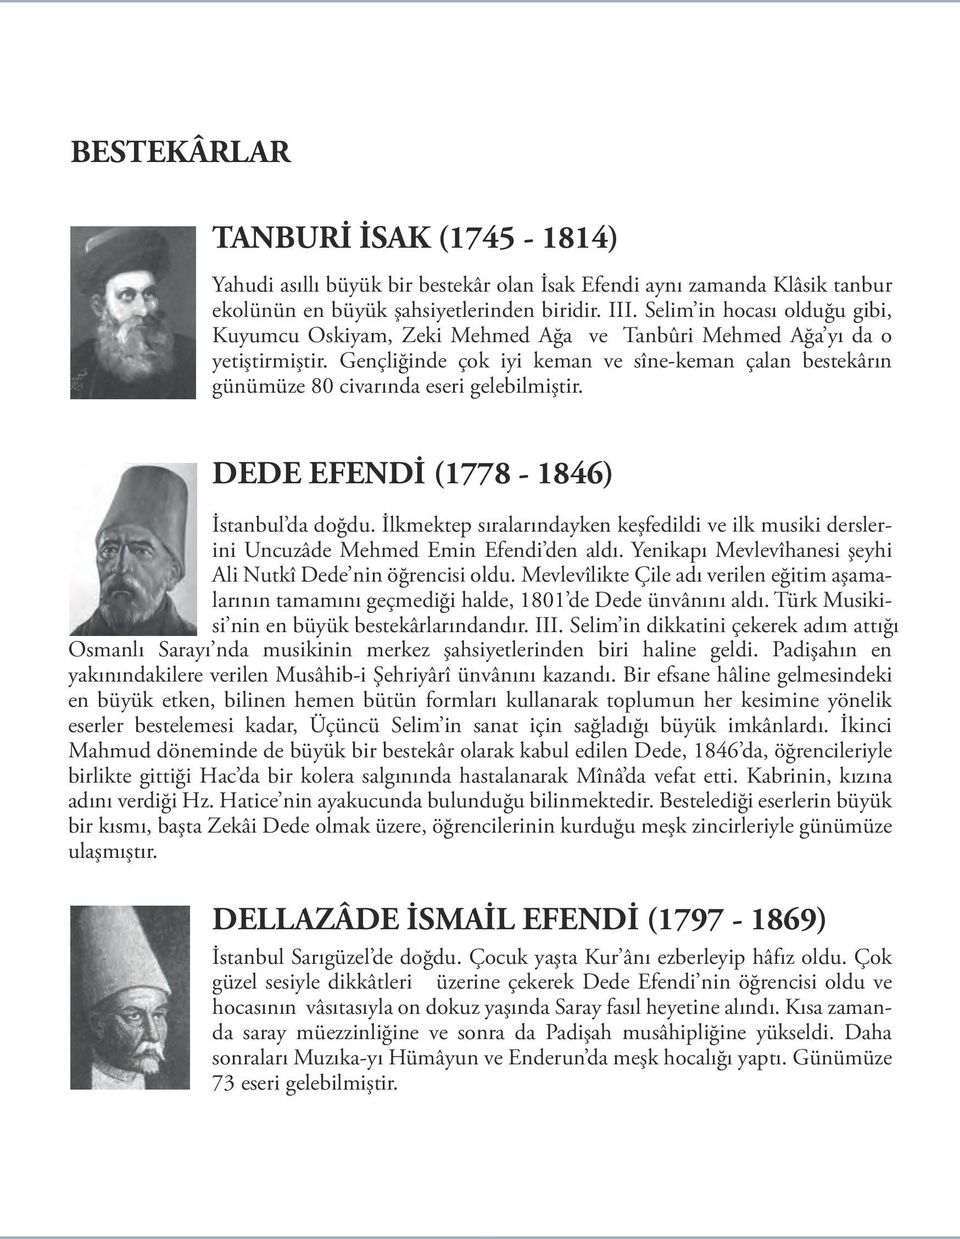 Gençliğinde çok iyi keman ve sîne-keman çalan bestekârın günümüze 80 civarında eseri gelebilmiştir. DEDE EFENDİ (1778-1846) İstanbul da doğdu.